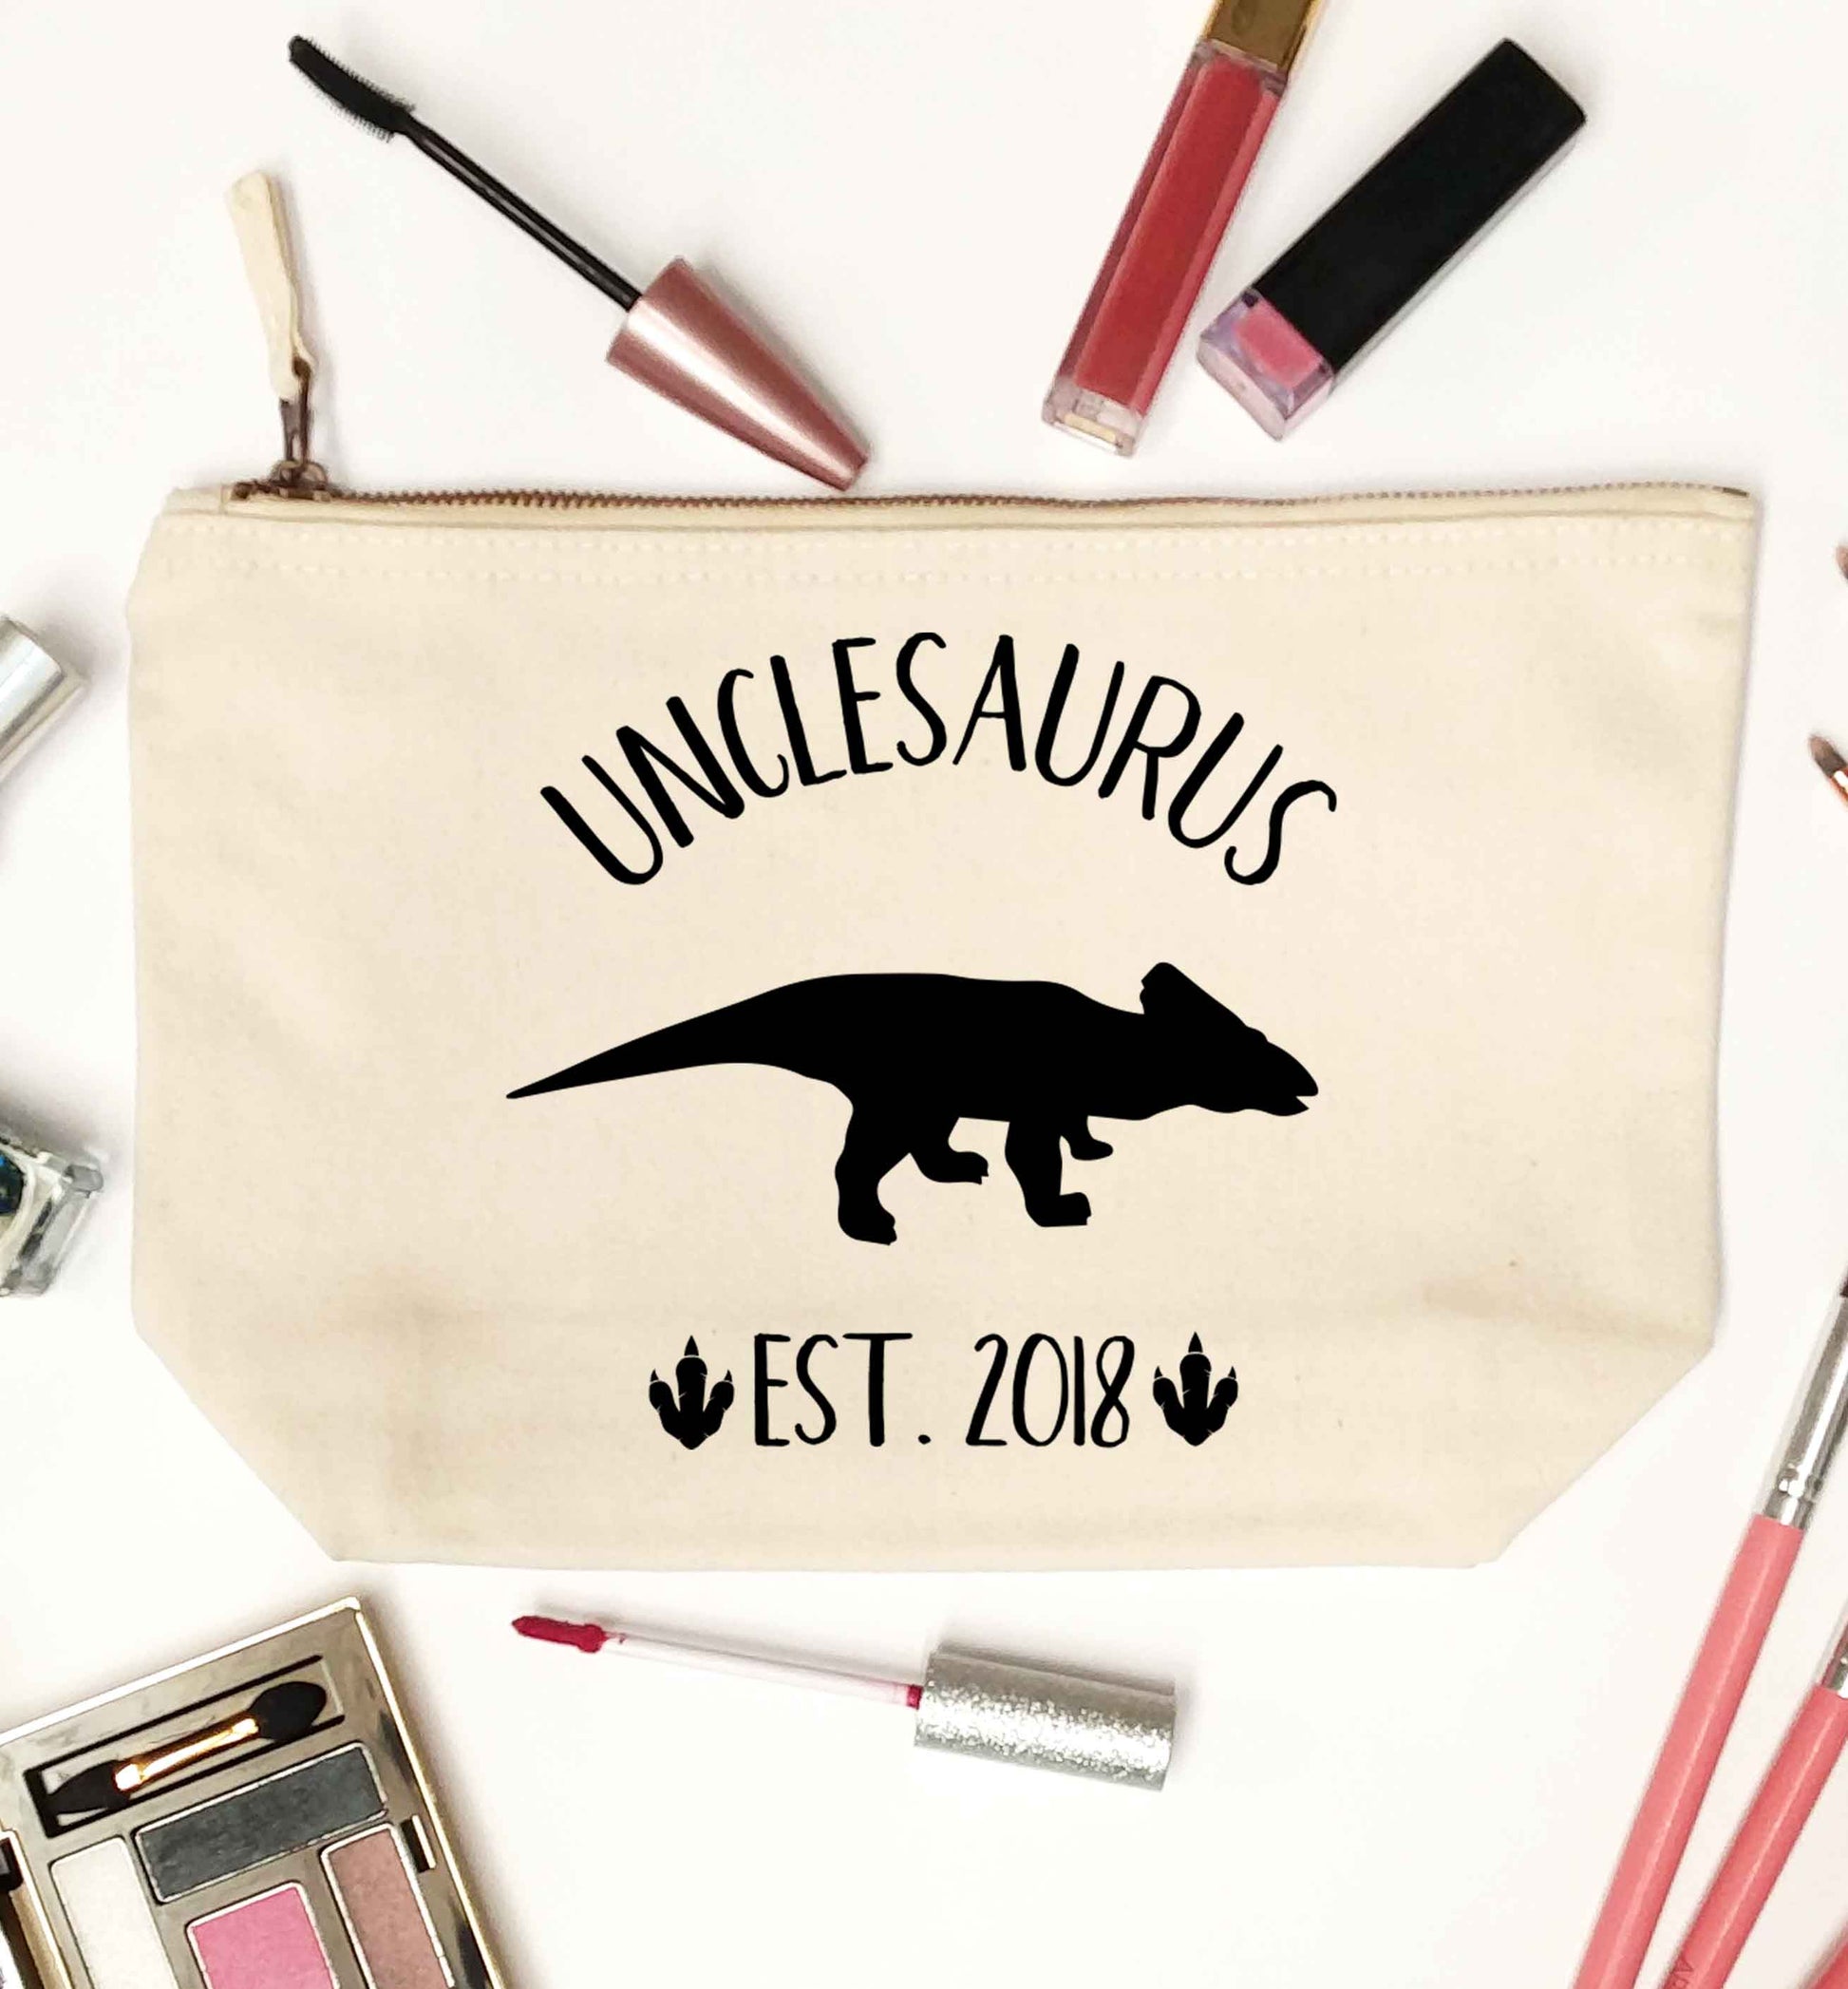 Personalised unclesaurus since (custom date) natural makeup bag